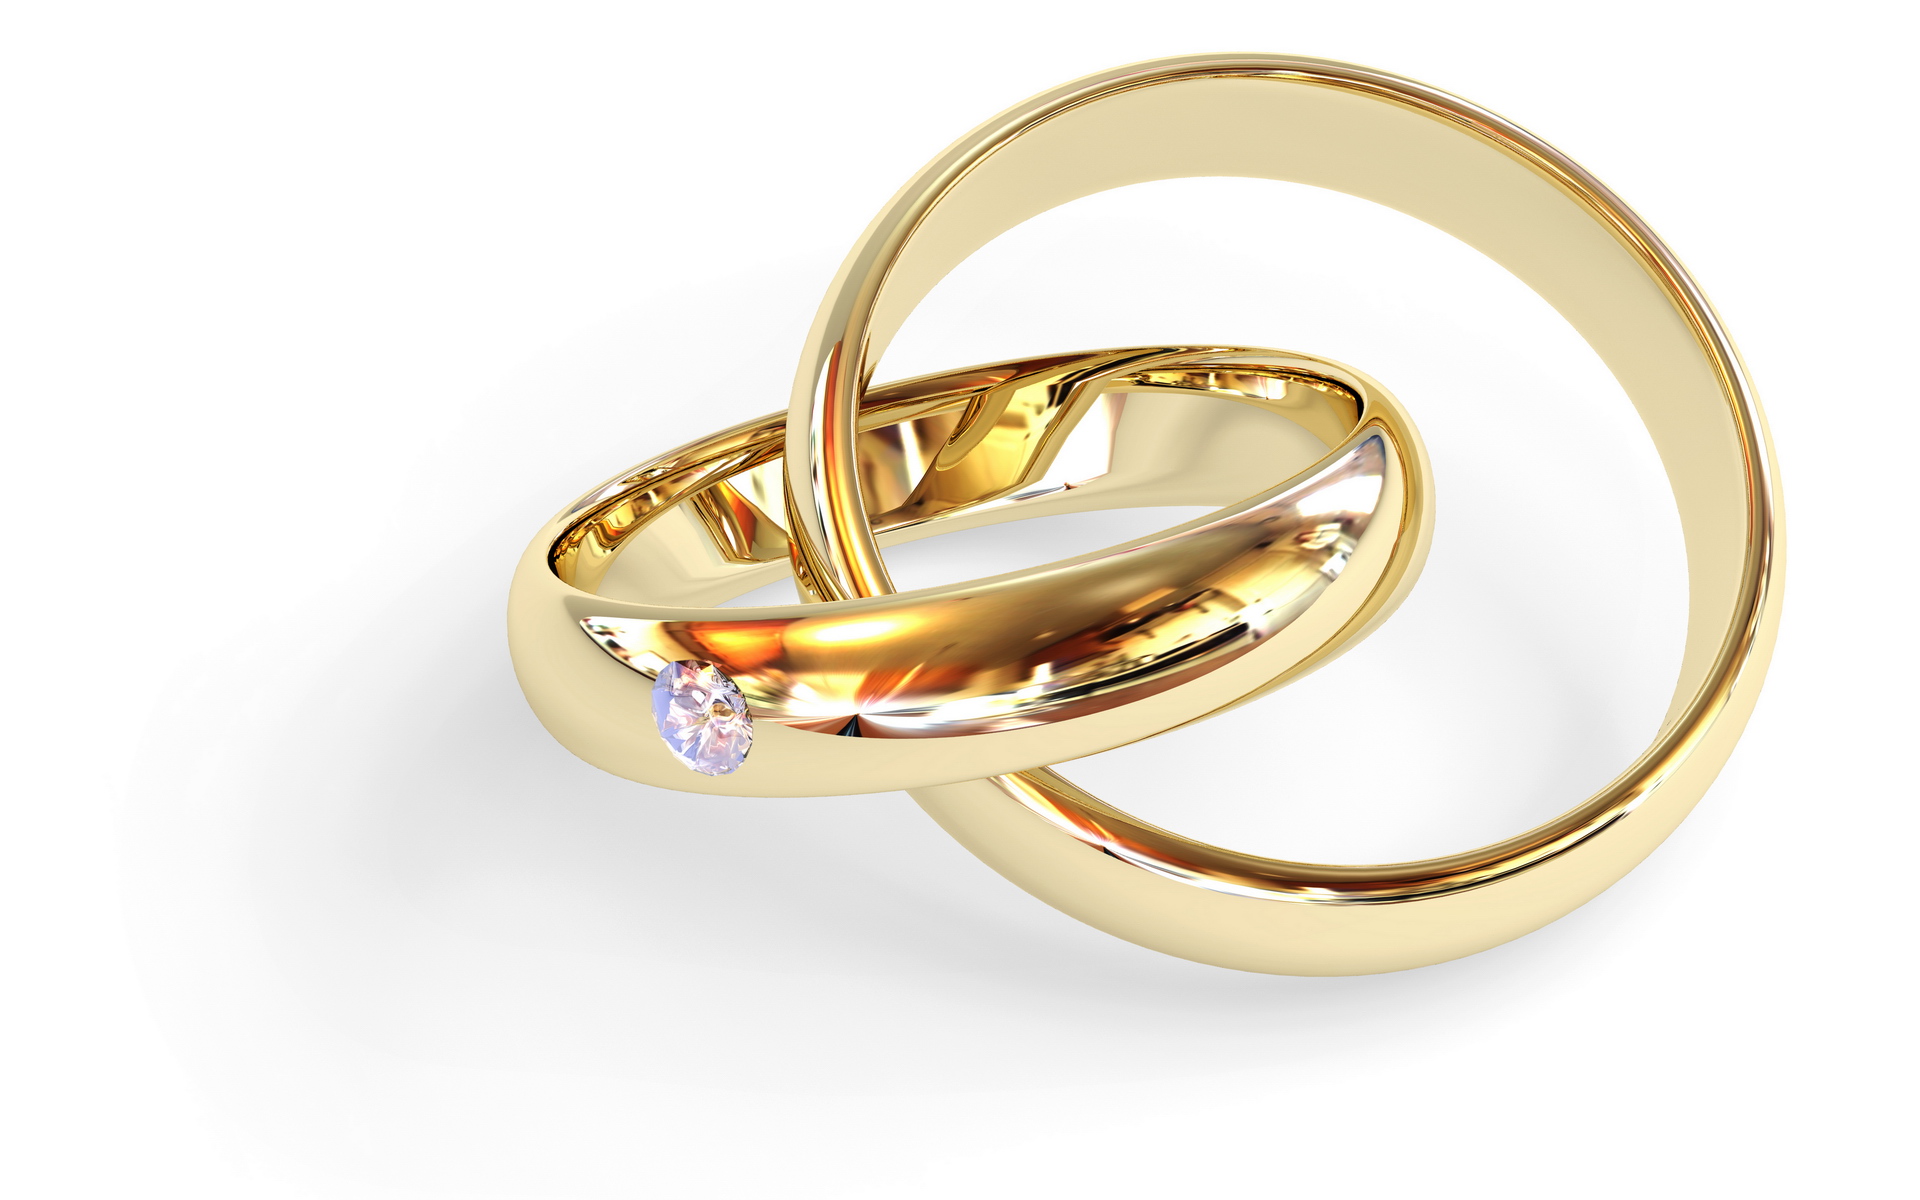 02 gold. Свадебные кольца. Кольца бракосочетания. Обручальные кольца на белом фоне. Свадебные кольца золотые.